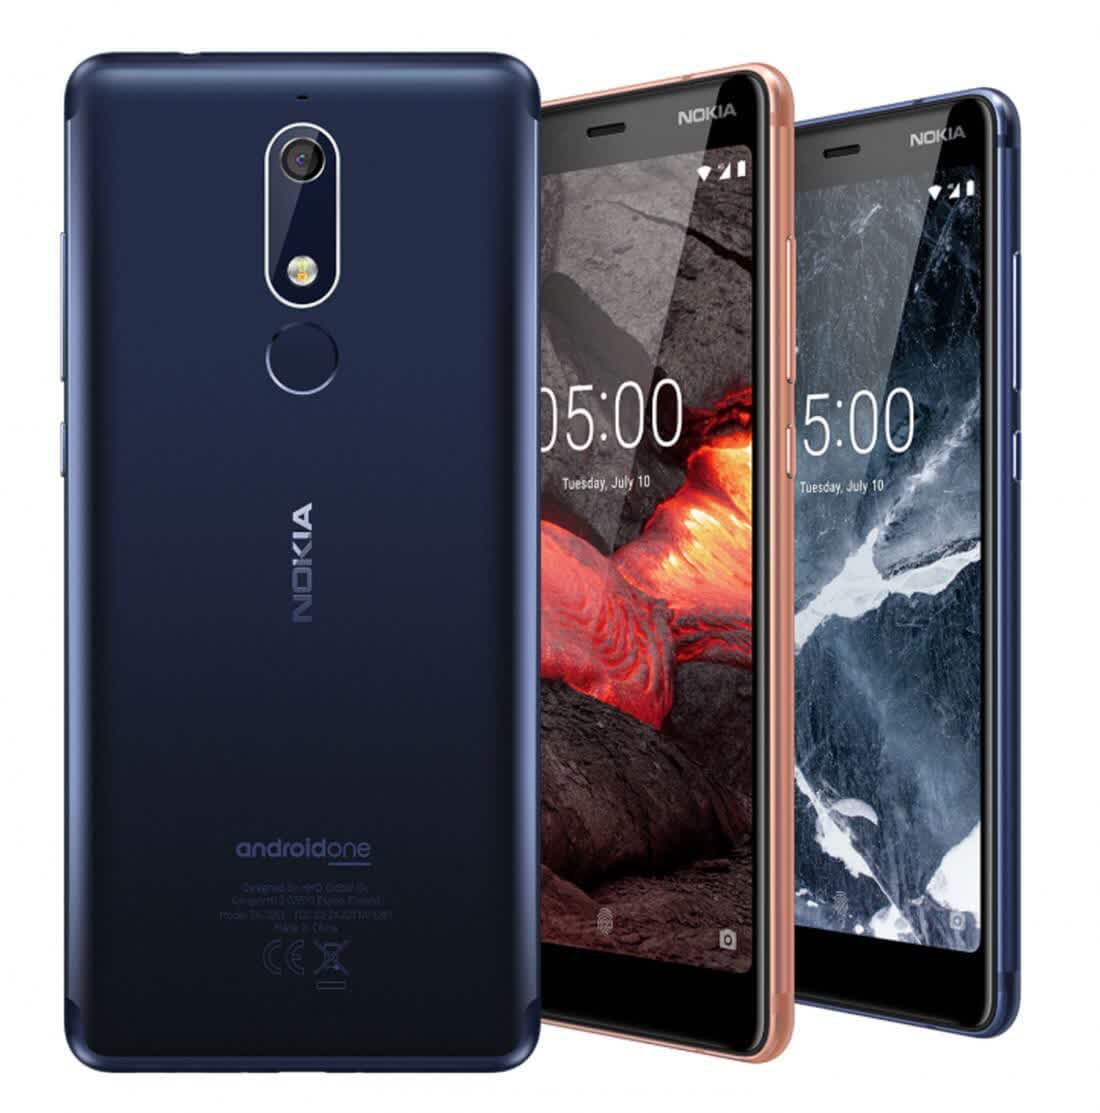 Nokia 3 1 2018 Reviews Pros And Cons Techspot